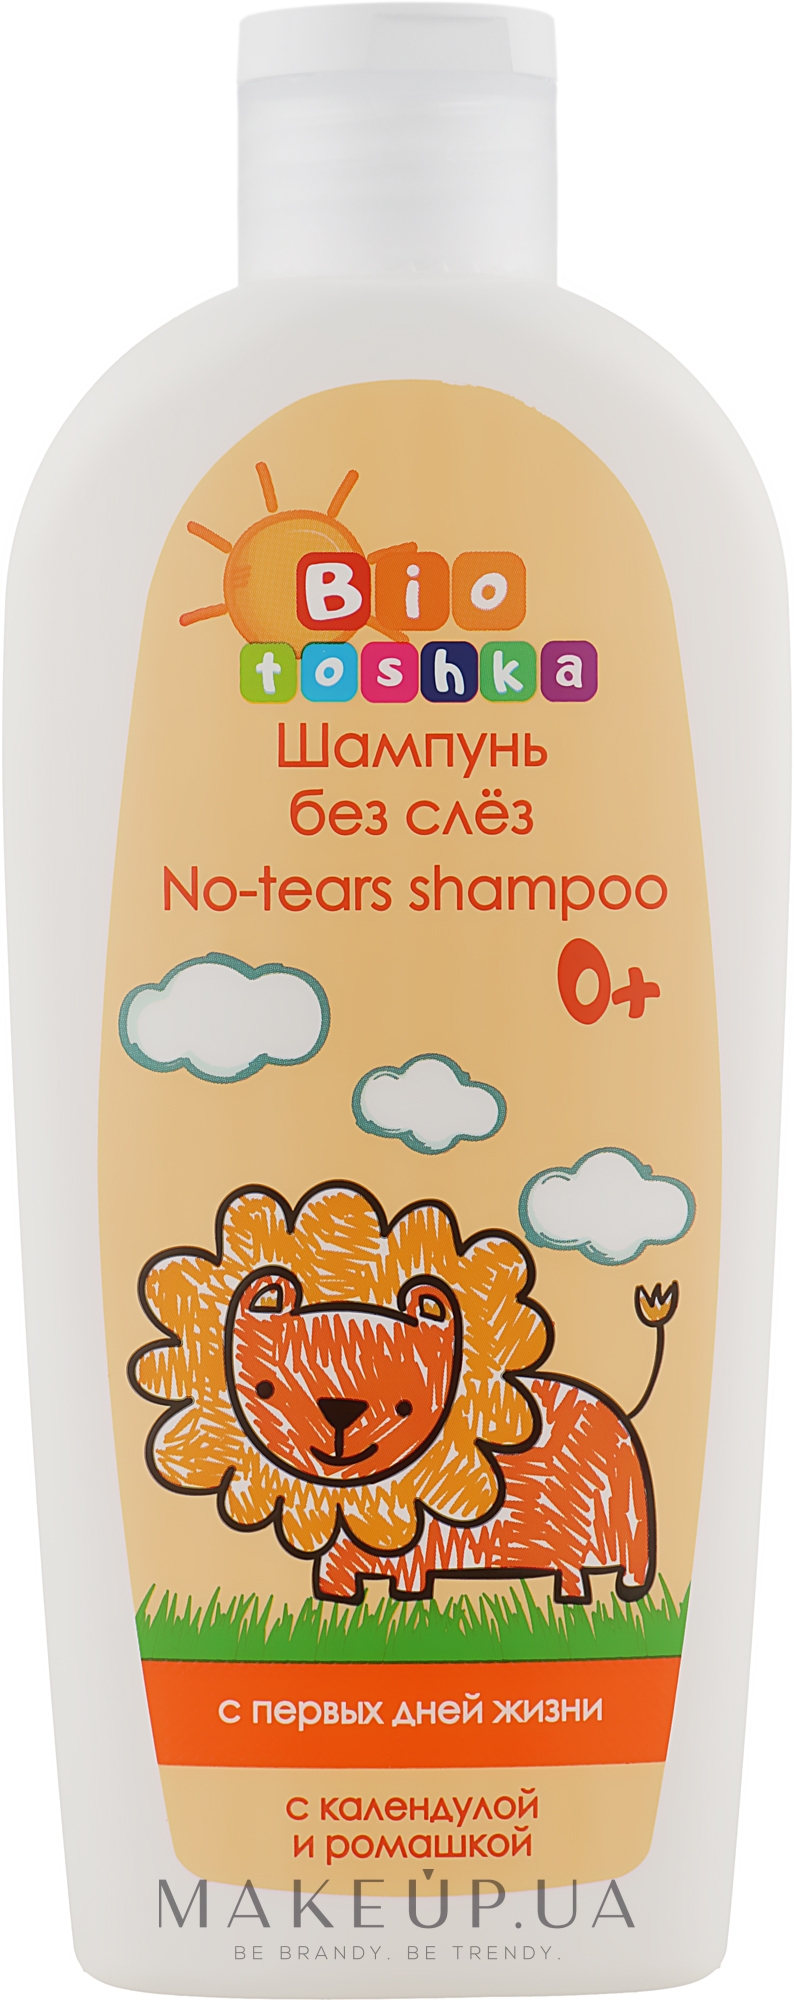 Шампунь без сліз з календулою і ромашкою, з перших днів життя - Bioton Cosmetics Biotoshka No-tears Shampoo — фото 250ml